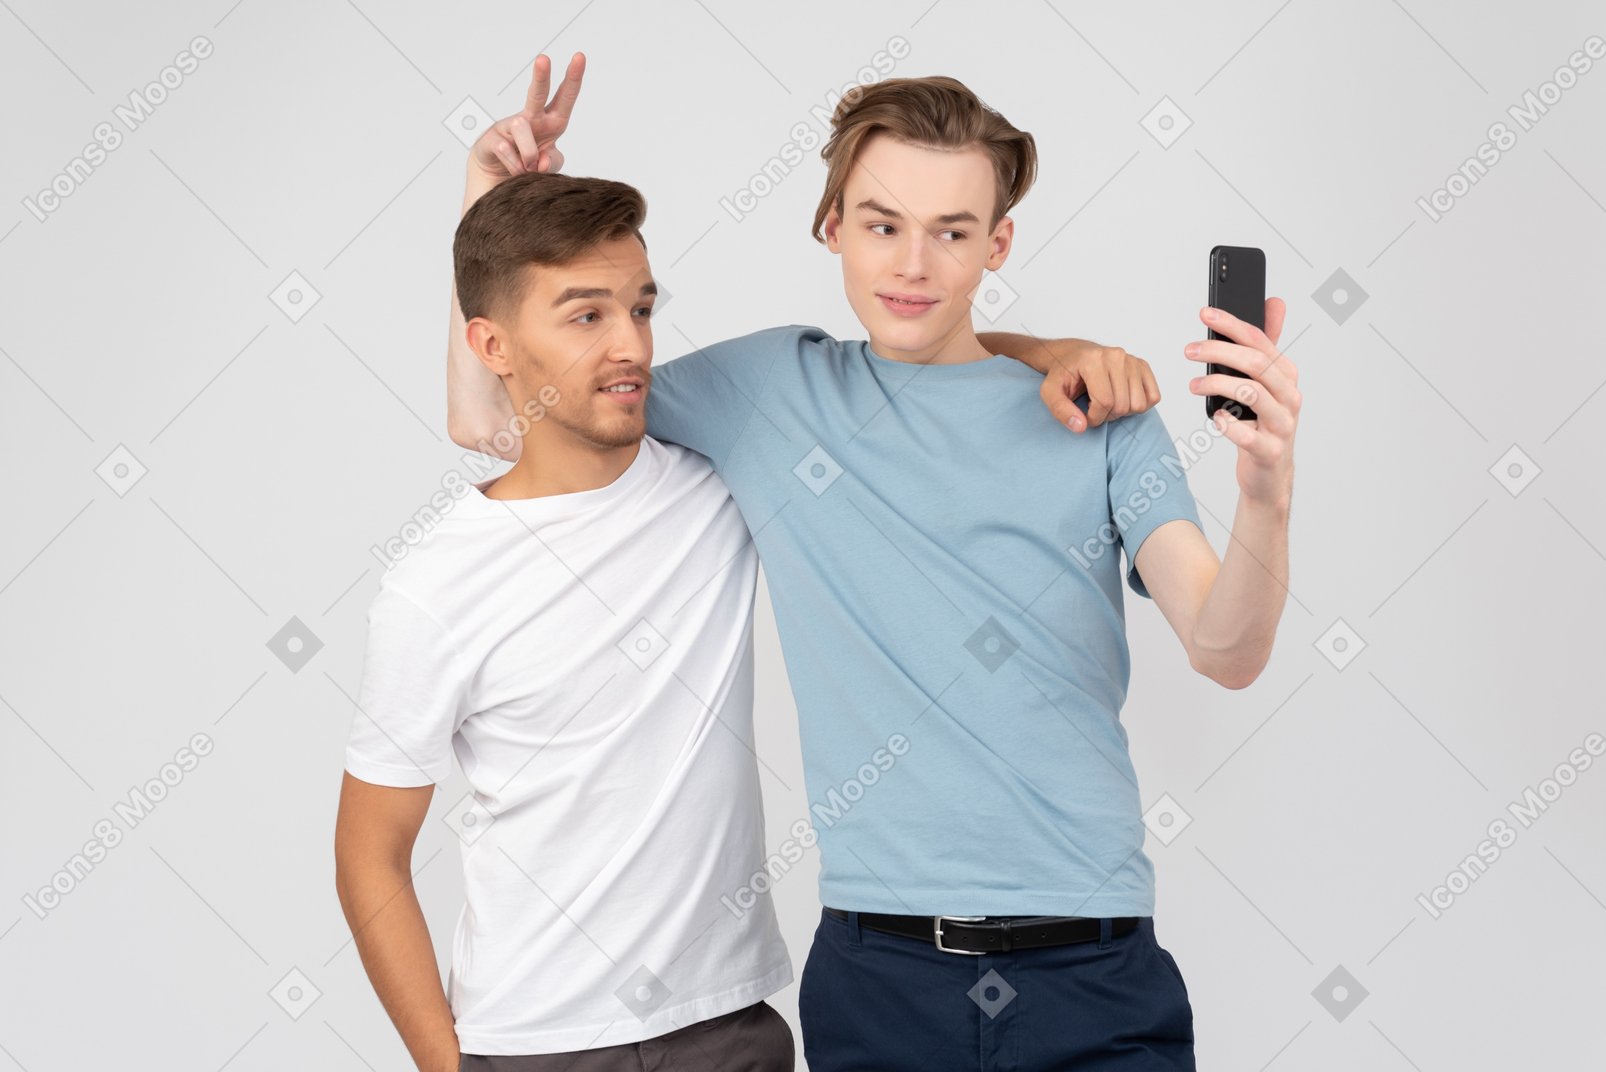 Un selfie veloce insieme al mio fratello